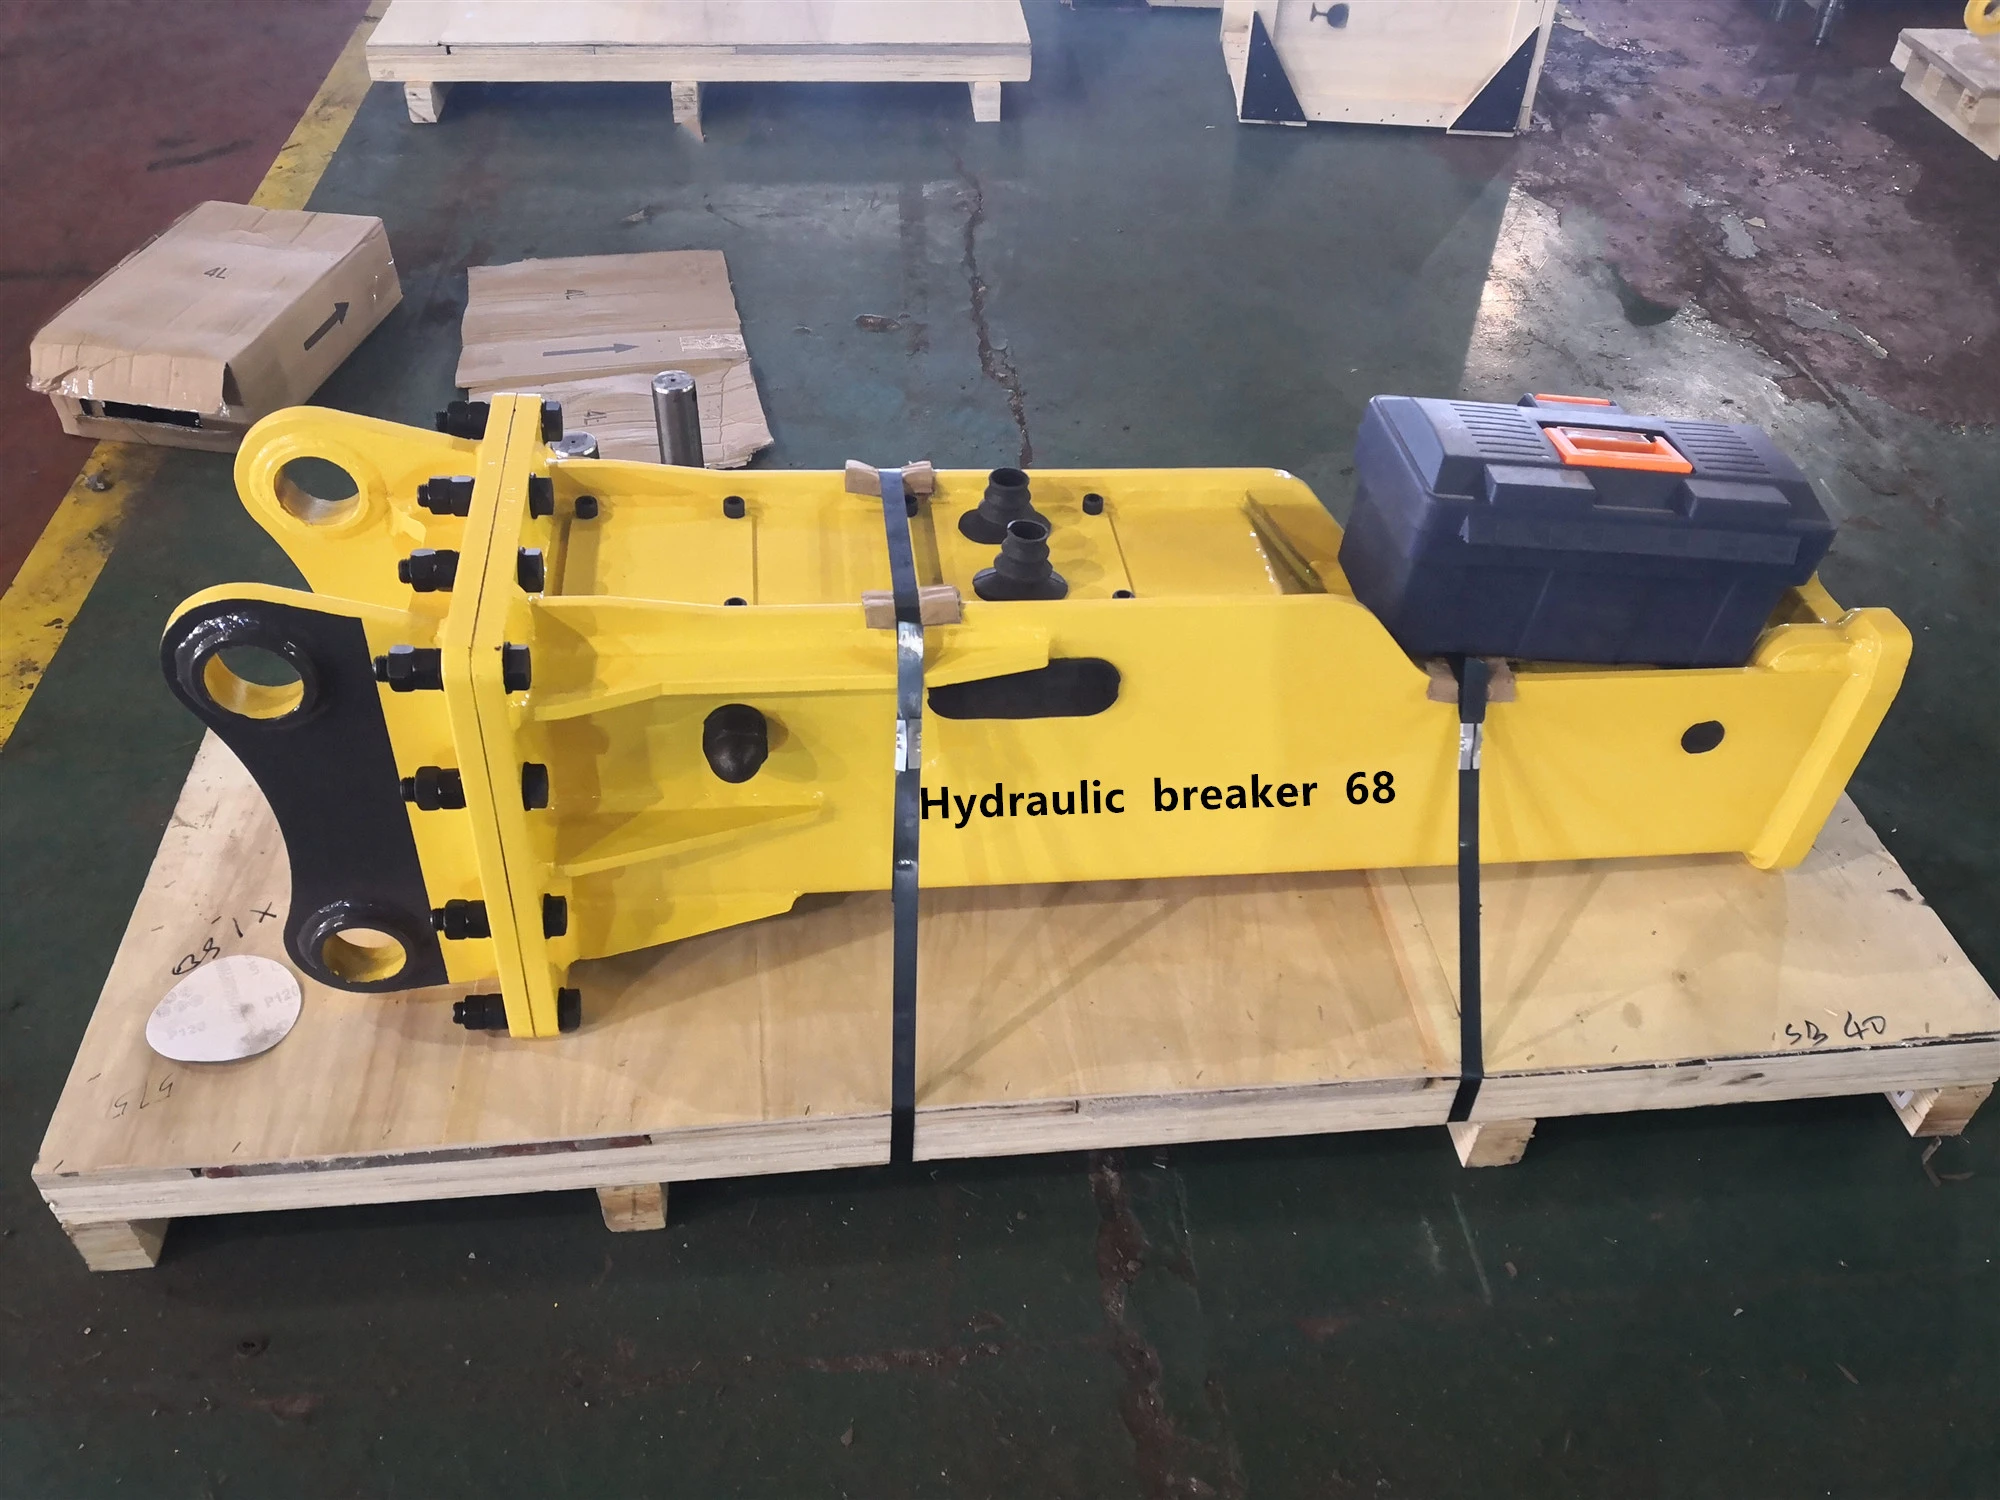 backhoe loader with hydraulic breaker